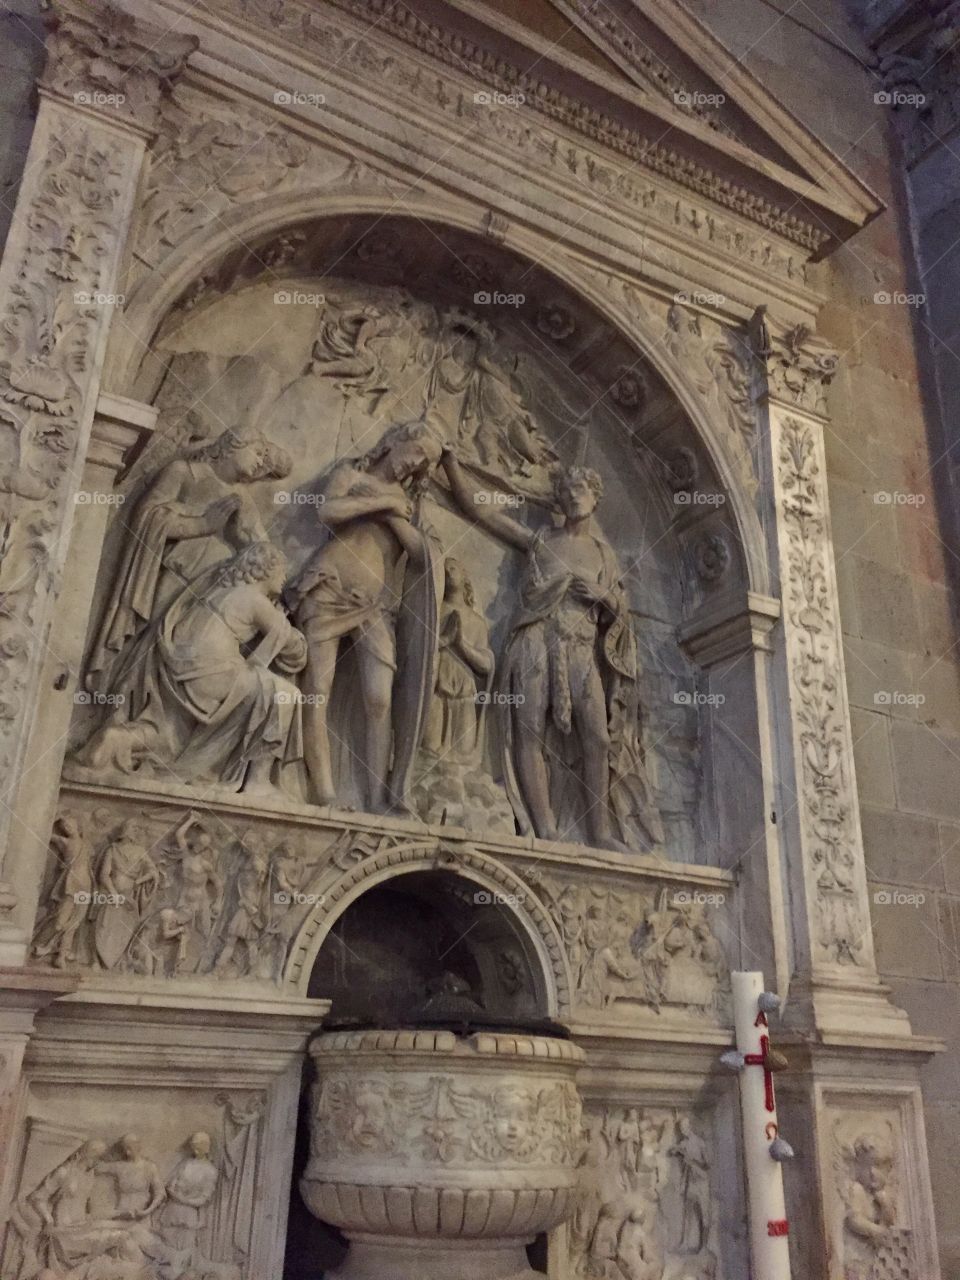 Sculpture inside an Italian church 